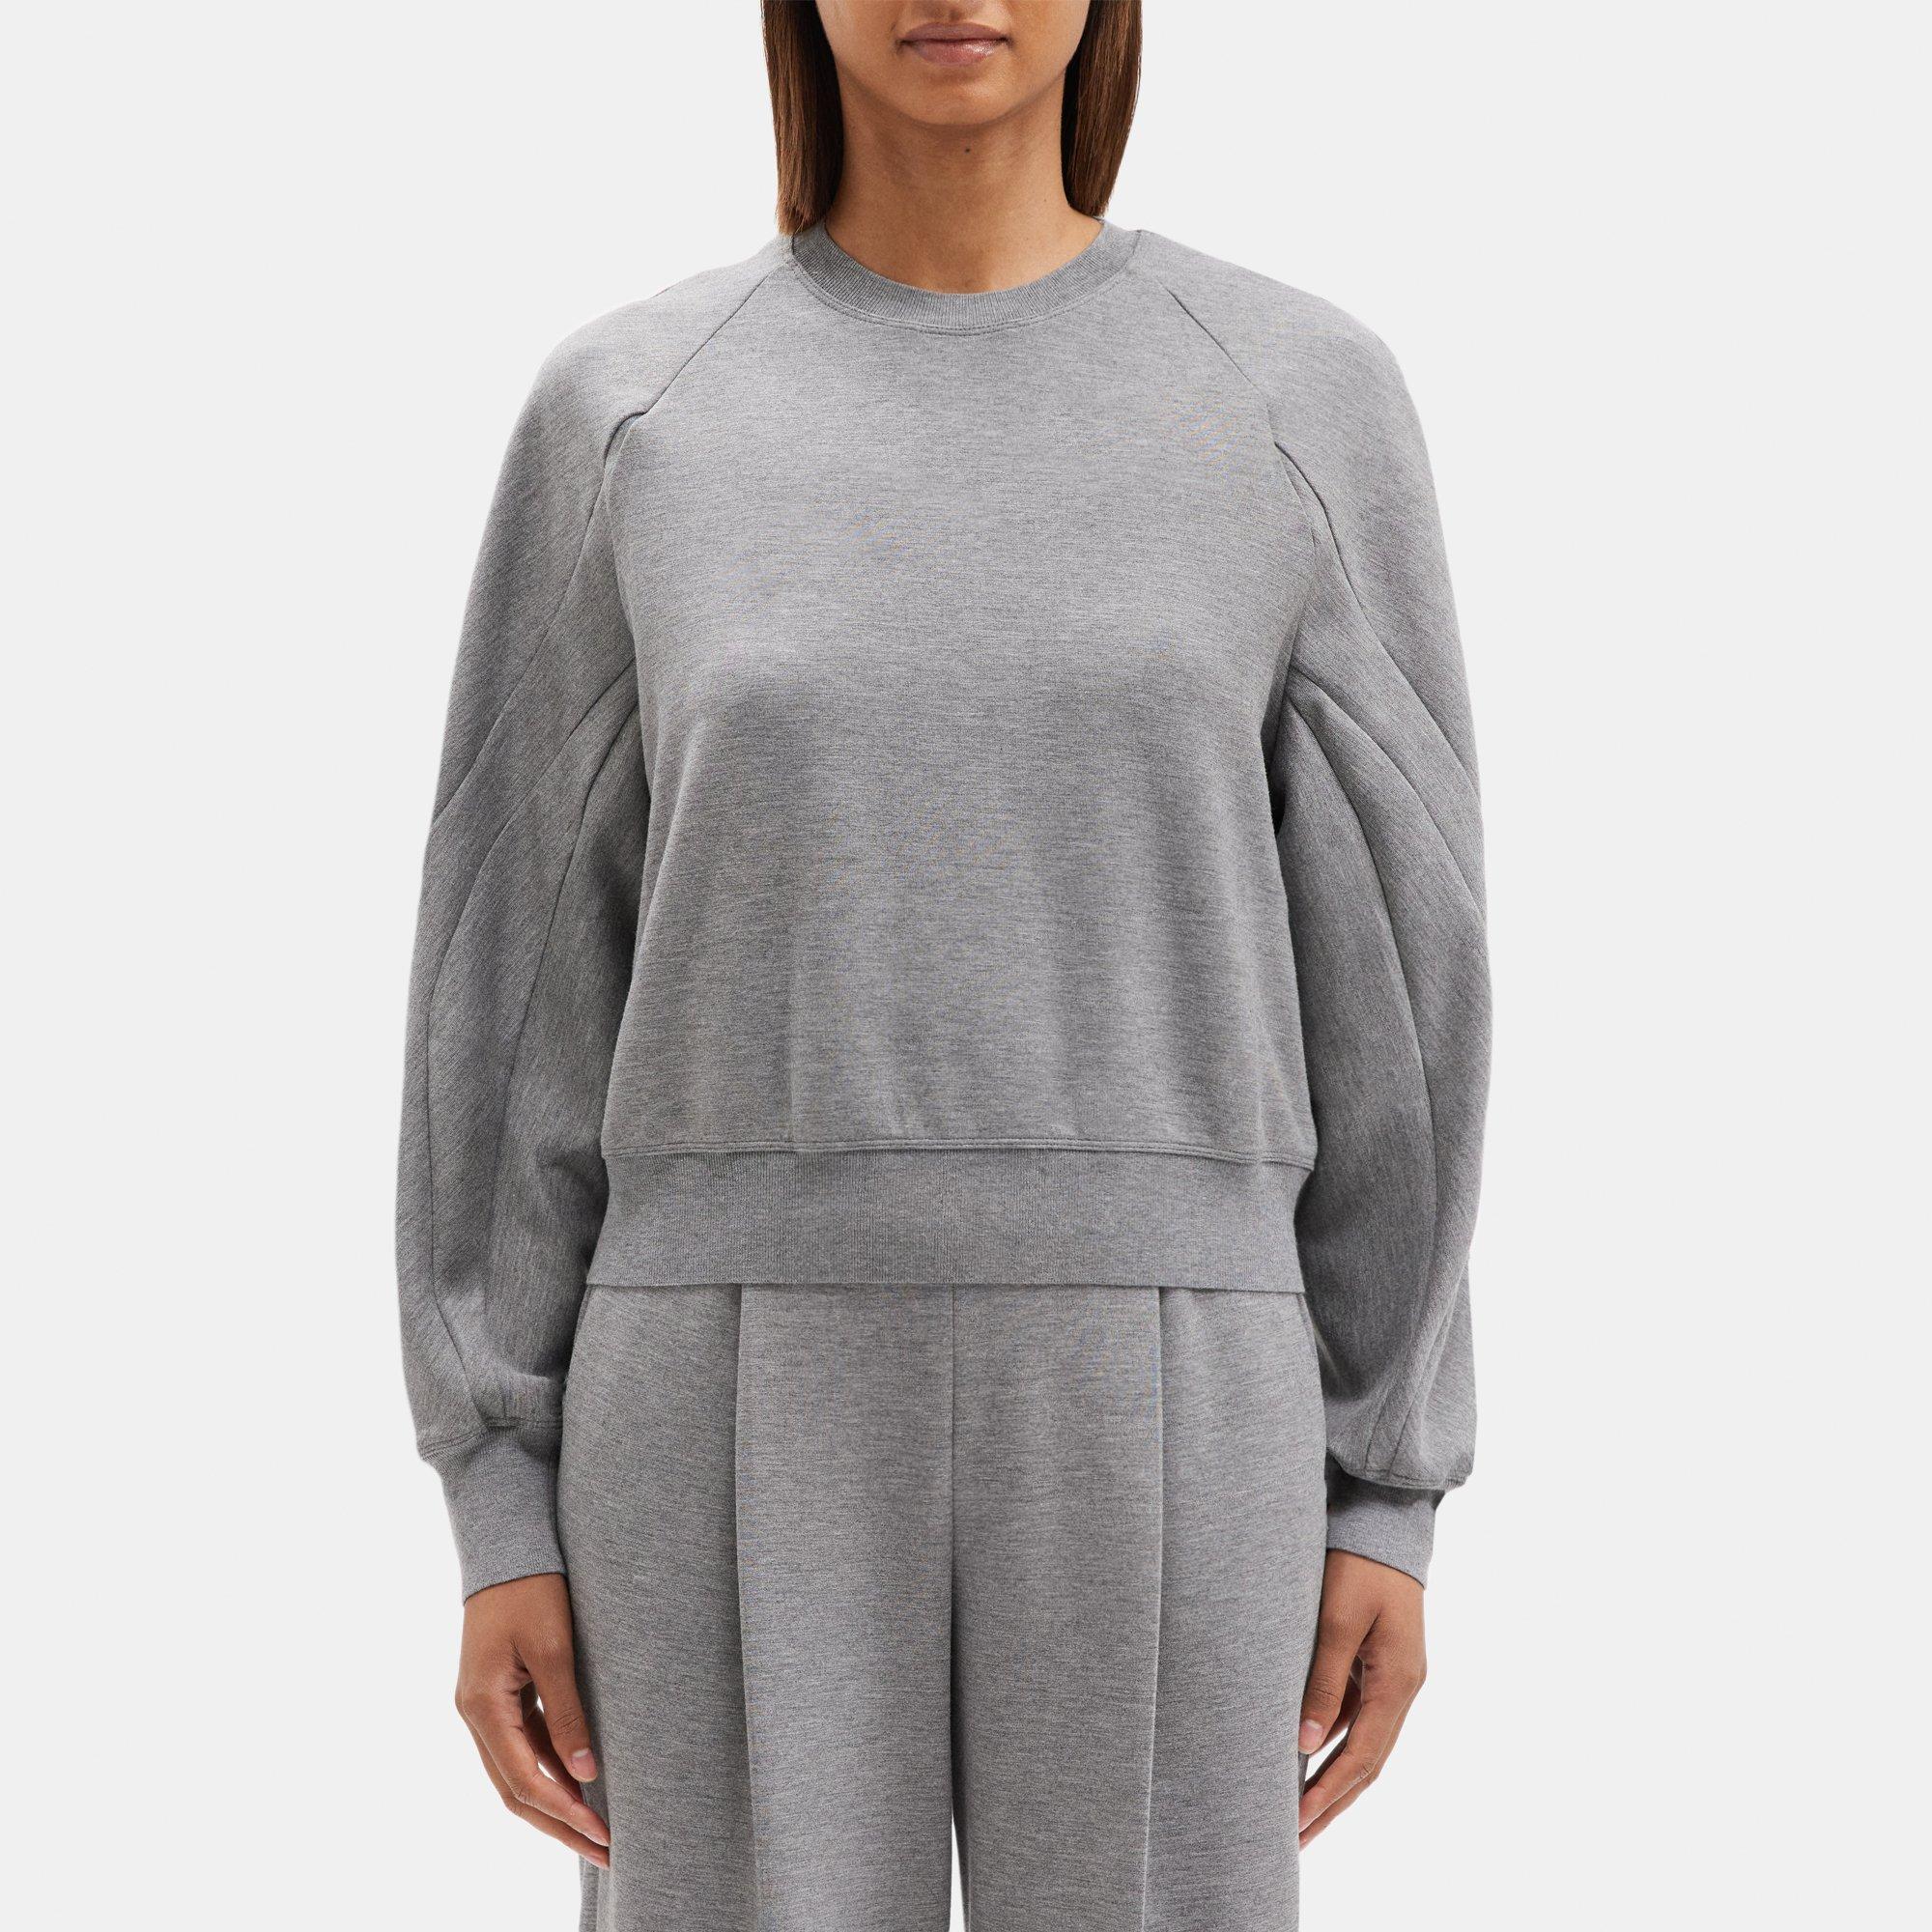 Theory Raglan Sleeve Sweatshirt in Double-Knit Jersey